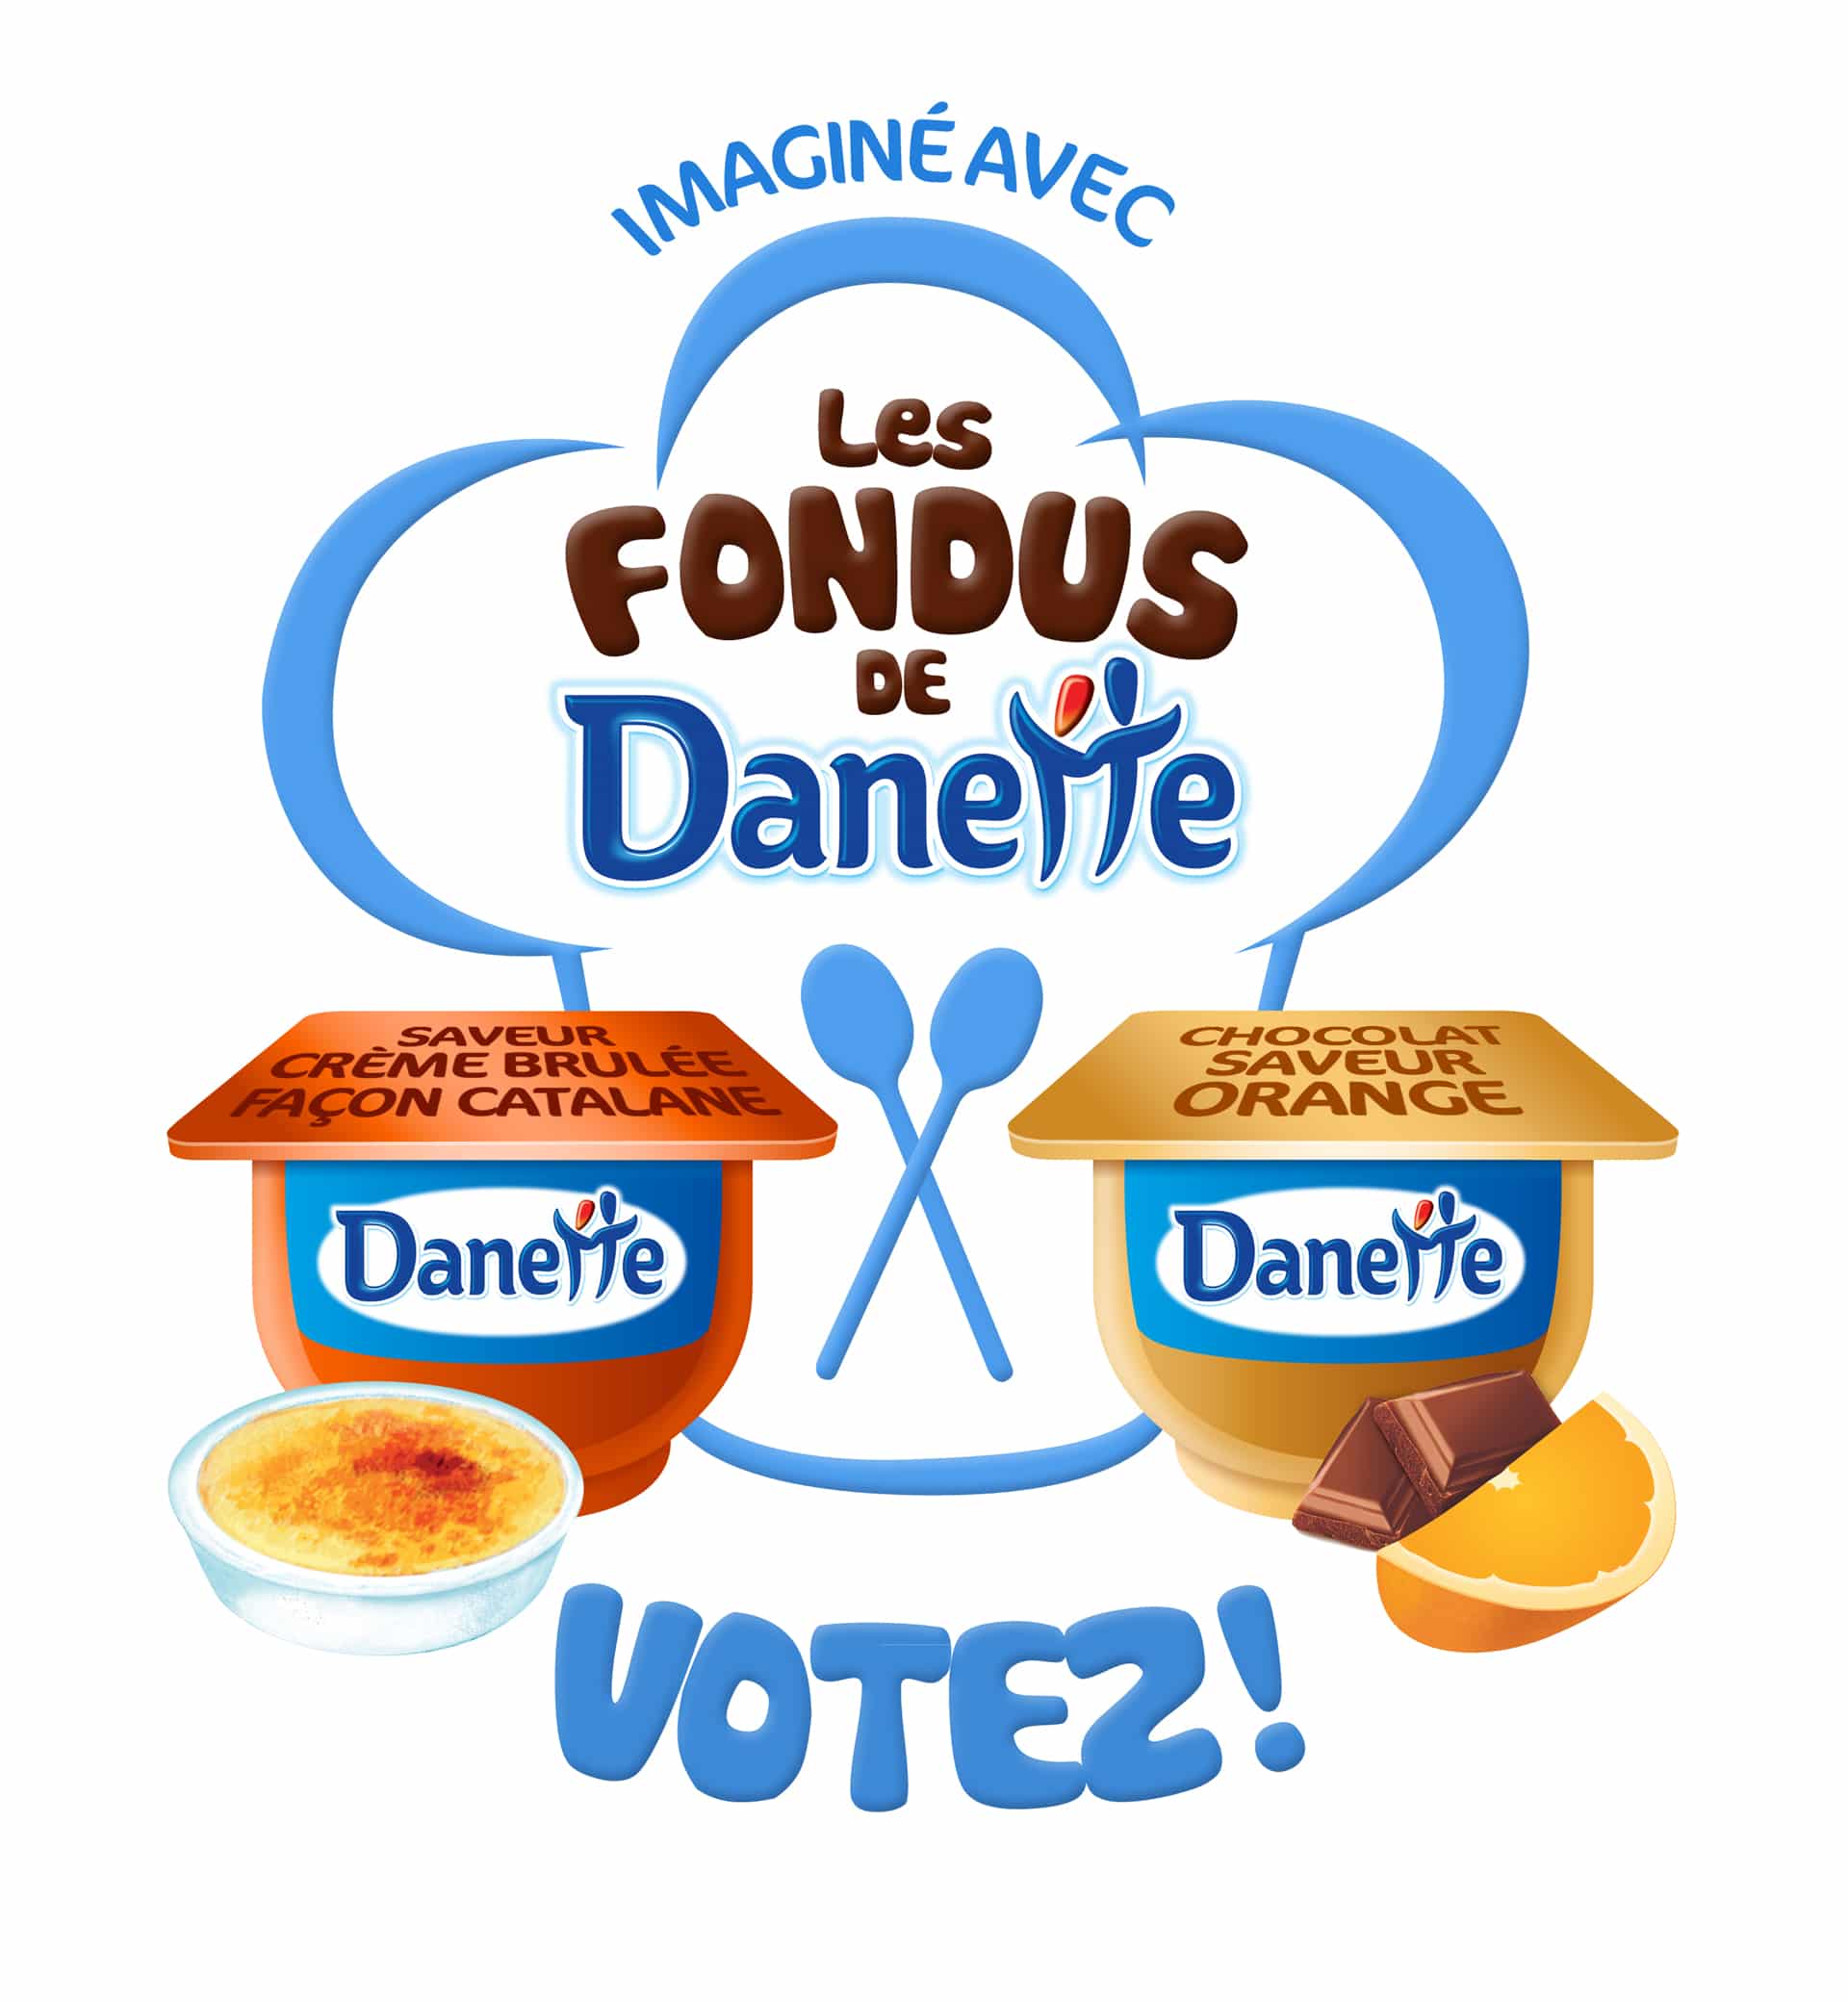 Danette vote 2012